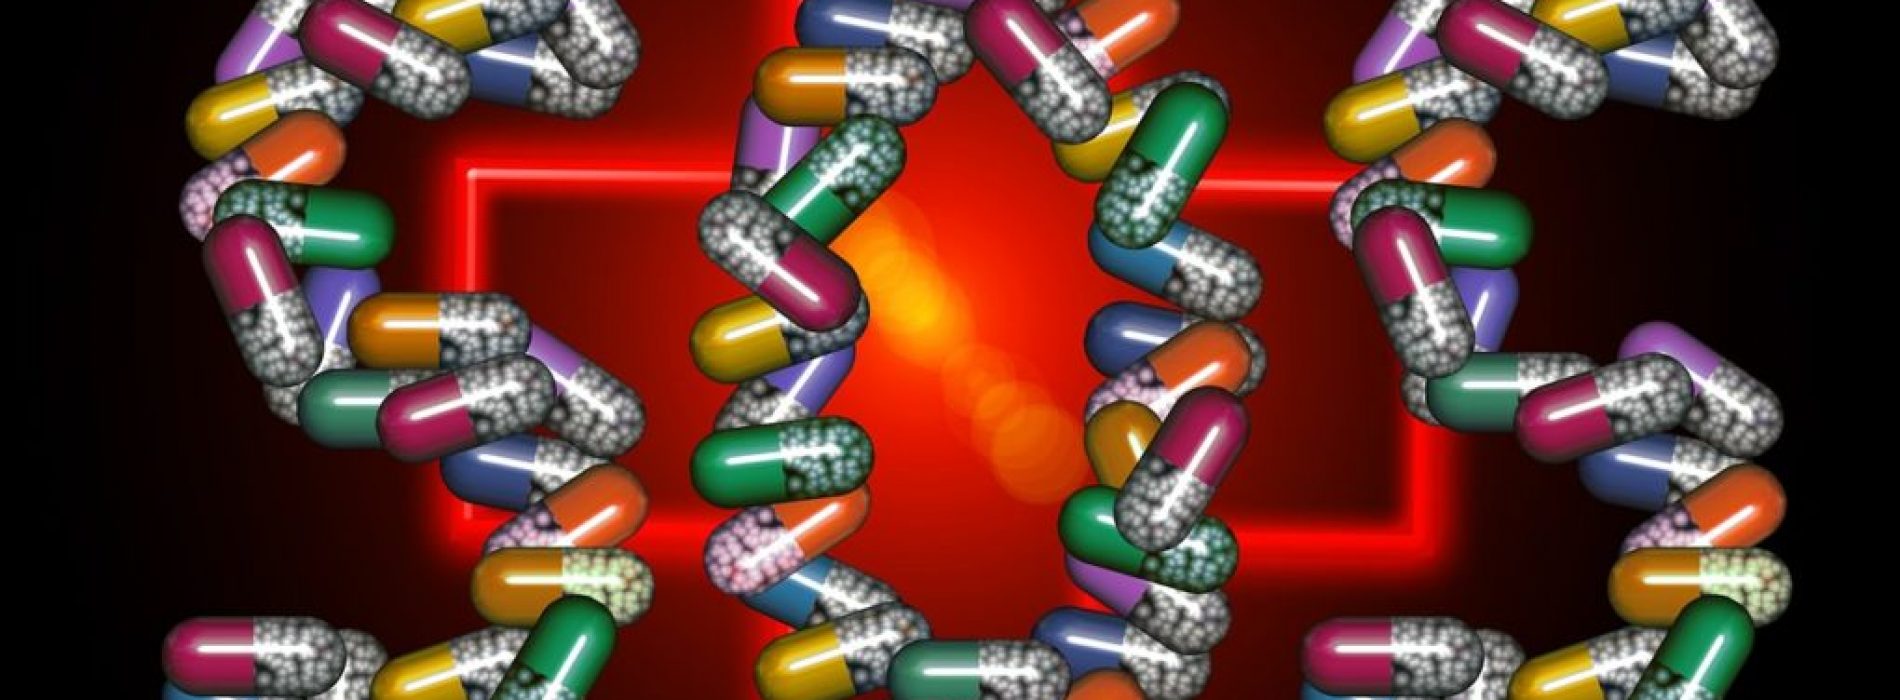 Nieuwe studie is “IJzingwekkend commentaar” over de toekomst van antibiotica